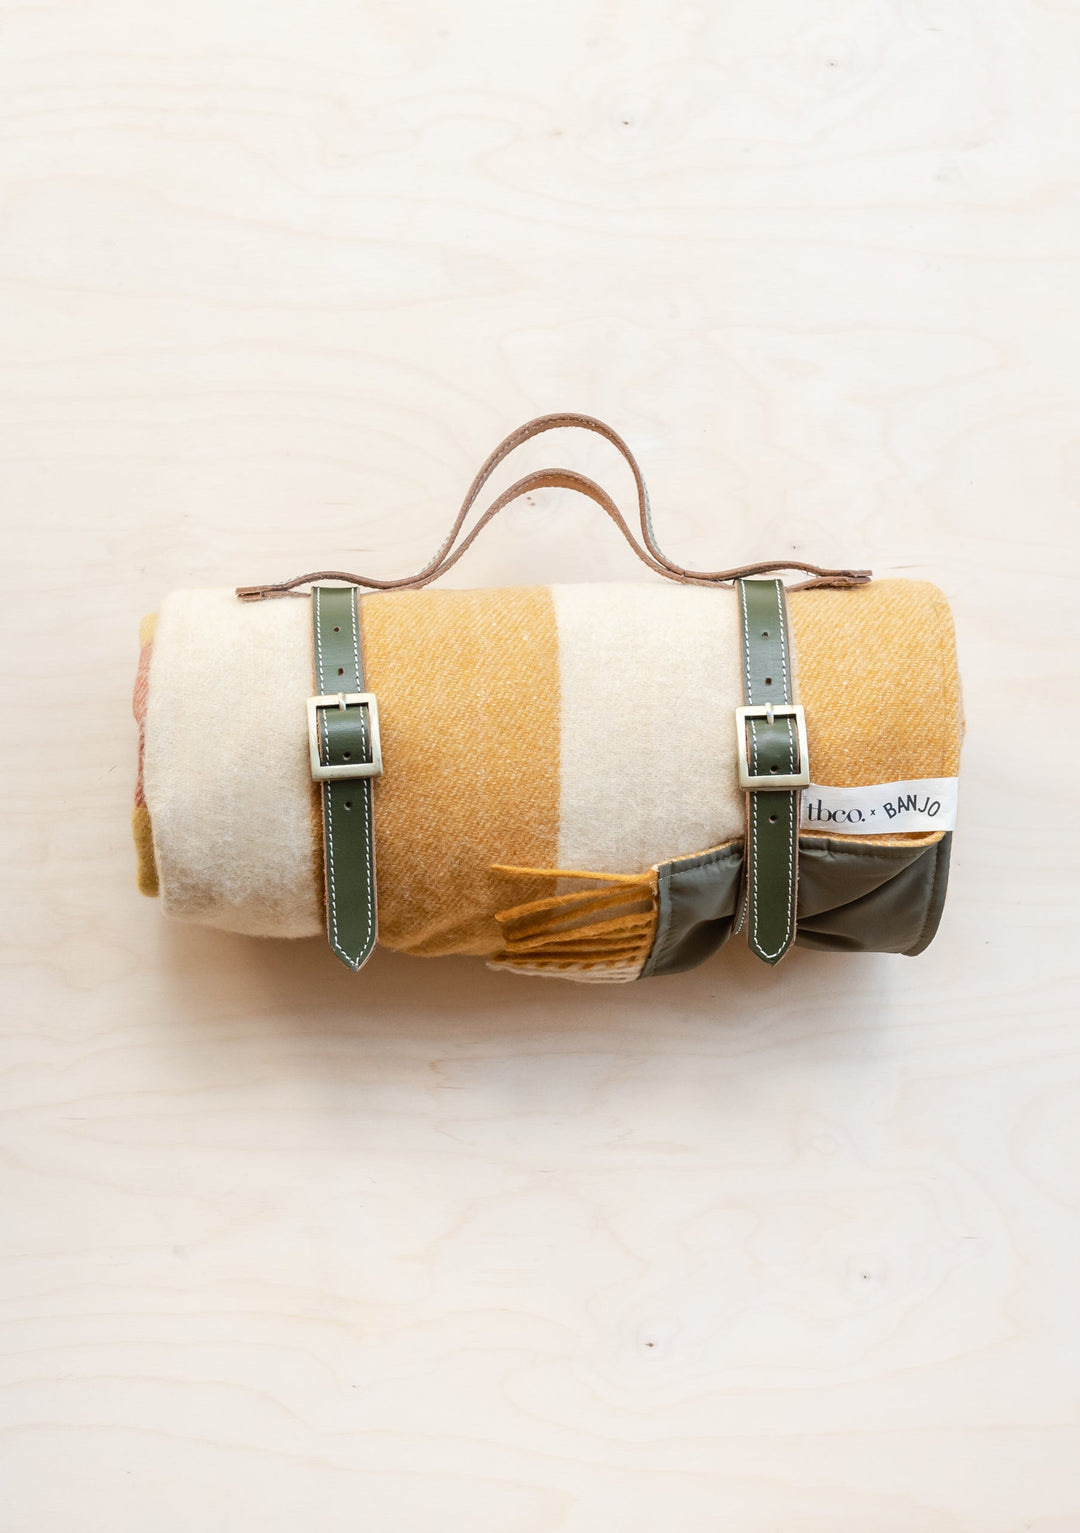 Couverture de pique-nique en laine recyclée TBCo x Banjo à carreaux à rayures dorées